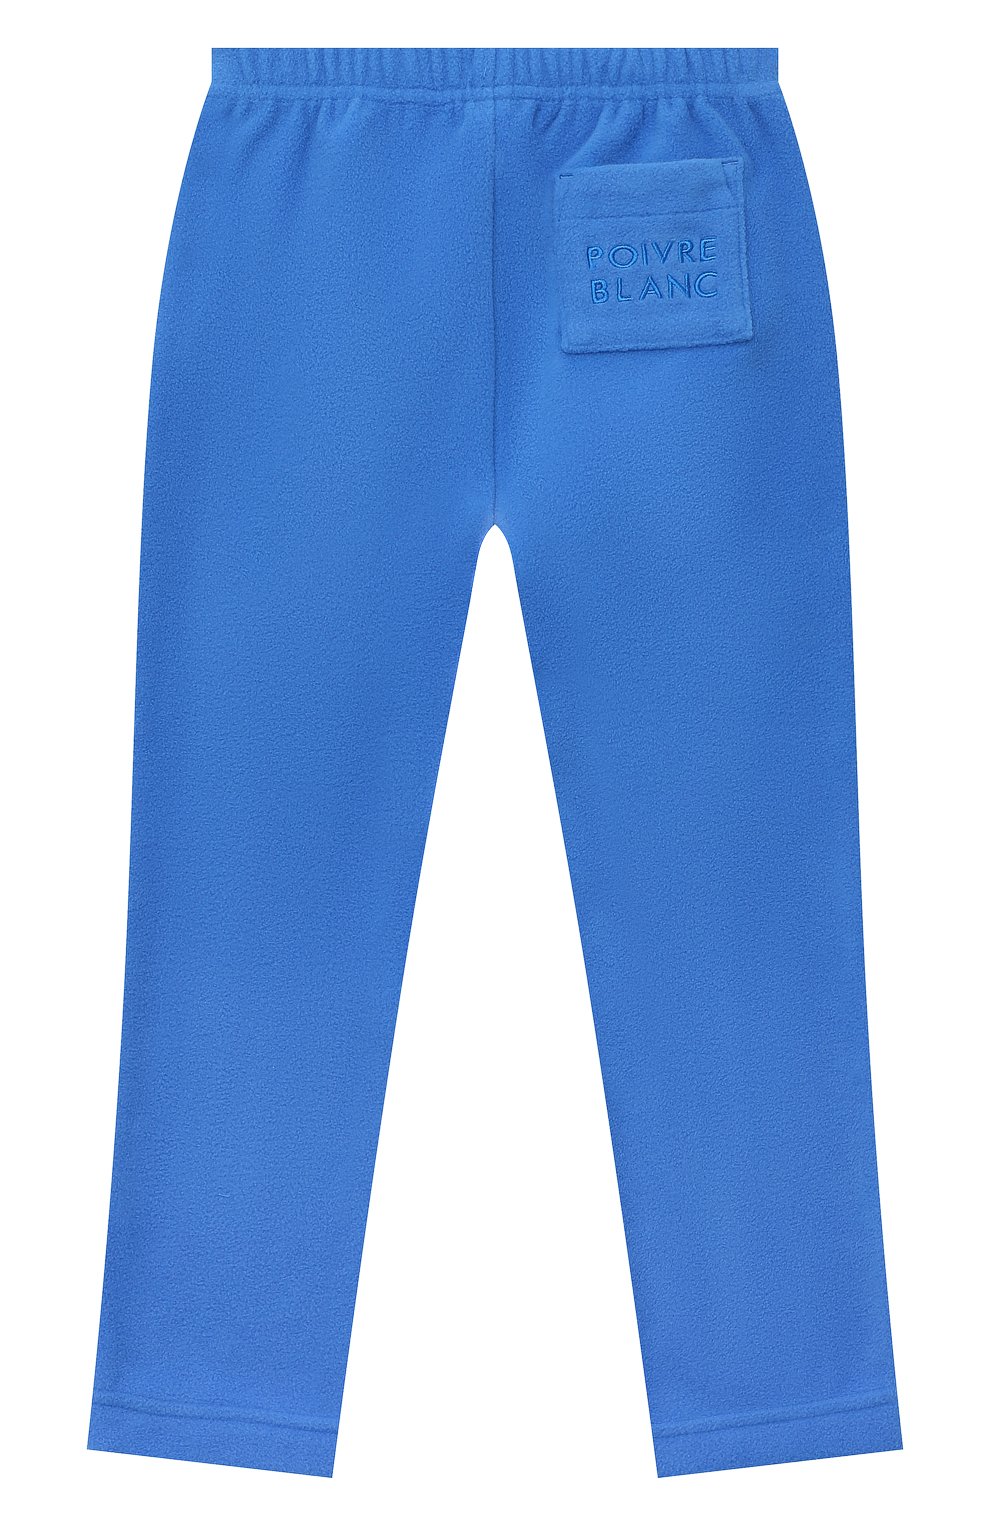 Детские брюки POIVRE BLANC синего цвета, арт. 295596 | Фото 2 (Материал внешний: Синтетический материал; Ростовка одежда: 3 года | 98 см, 4 года | 104 см, 5 лет | 110 см, 6 лет | 116 см)